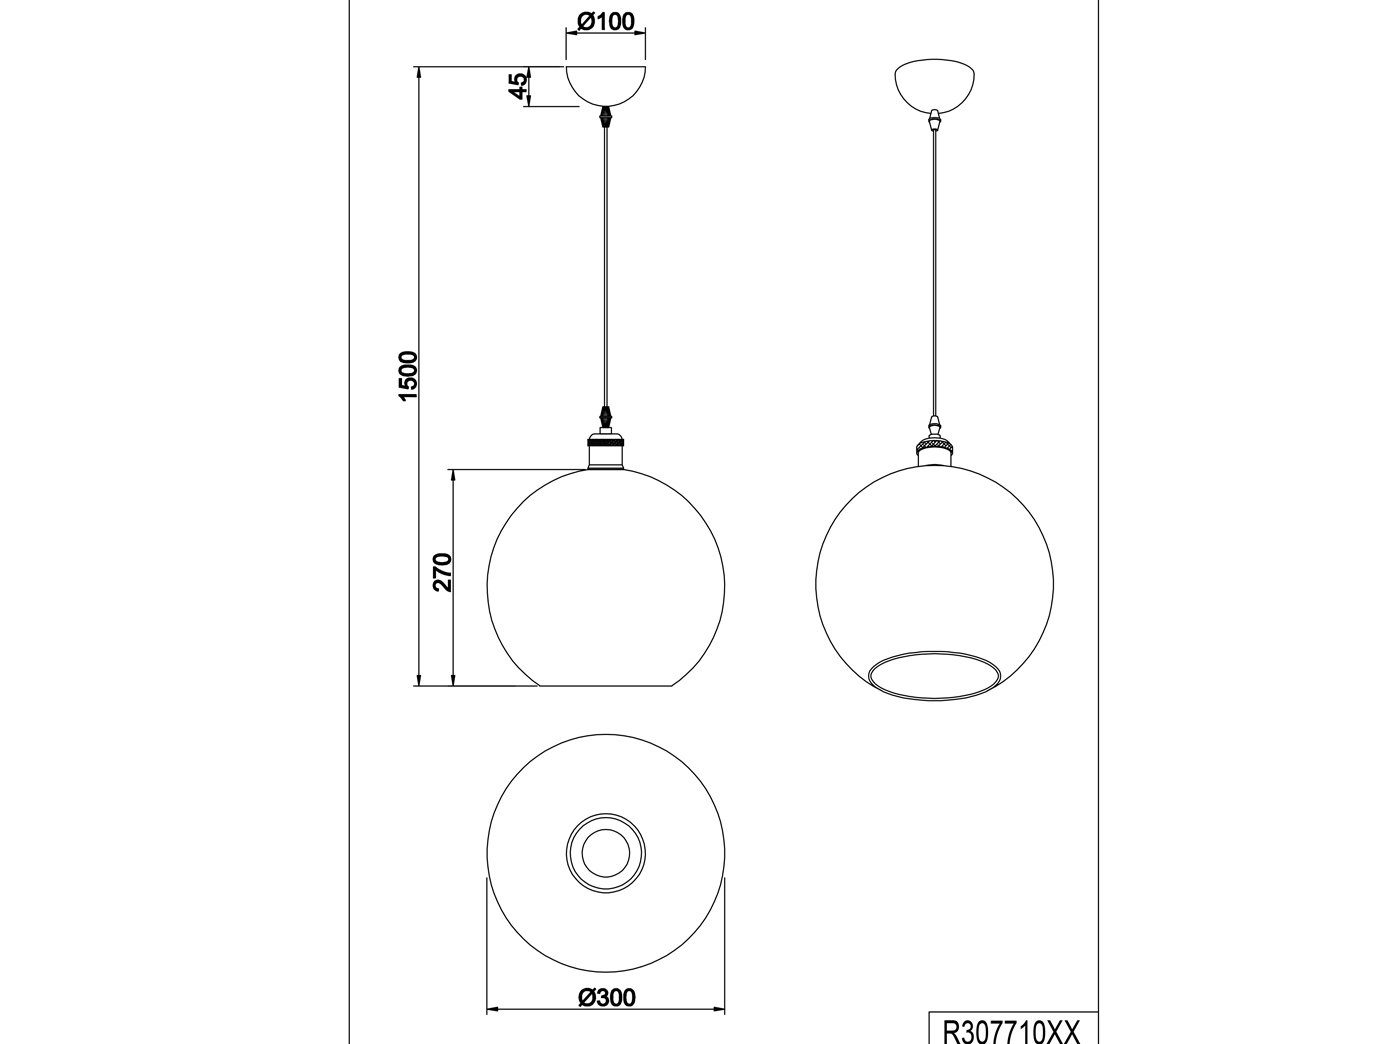 TRIO LED für Ø wechselbar, Glas-kugel Pendelleuchte, Kücheninsel Warmweiß, Dimmfunktion, hängend mit Transparent LED Lampenschirm & 30cm Esstisch